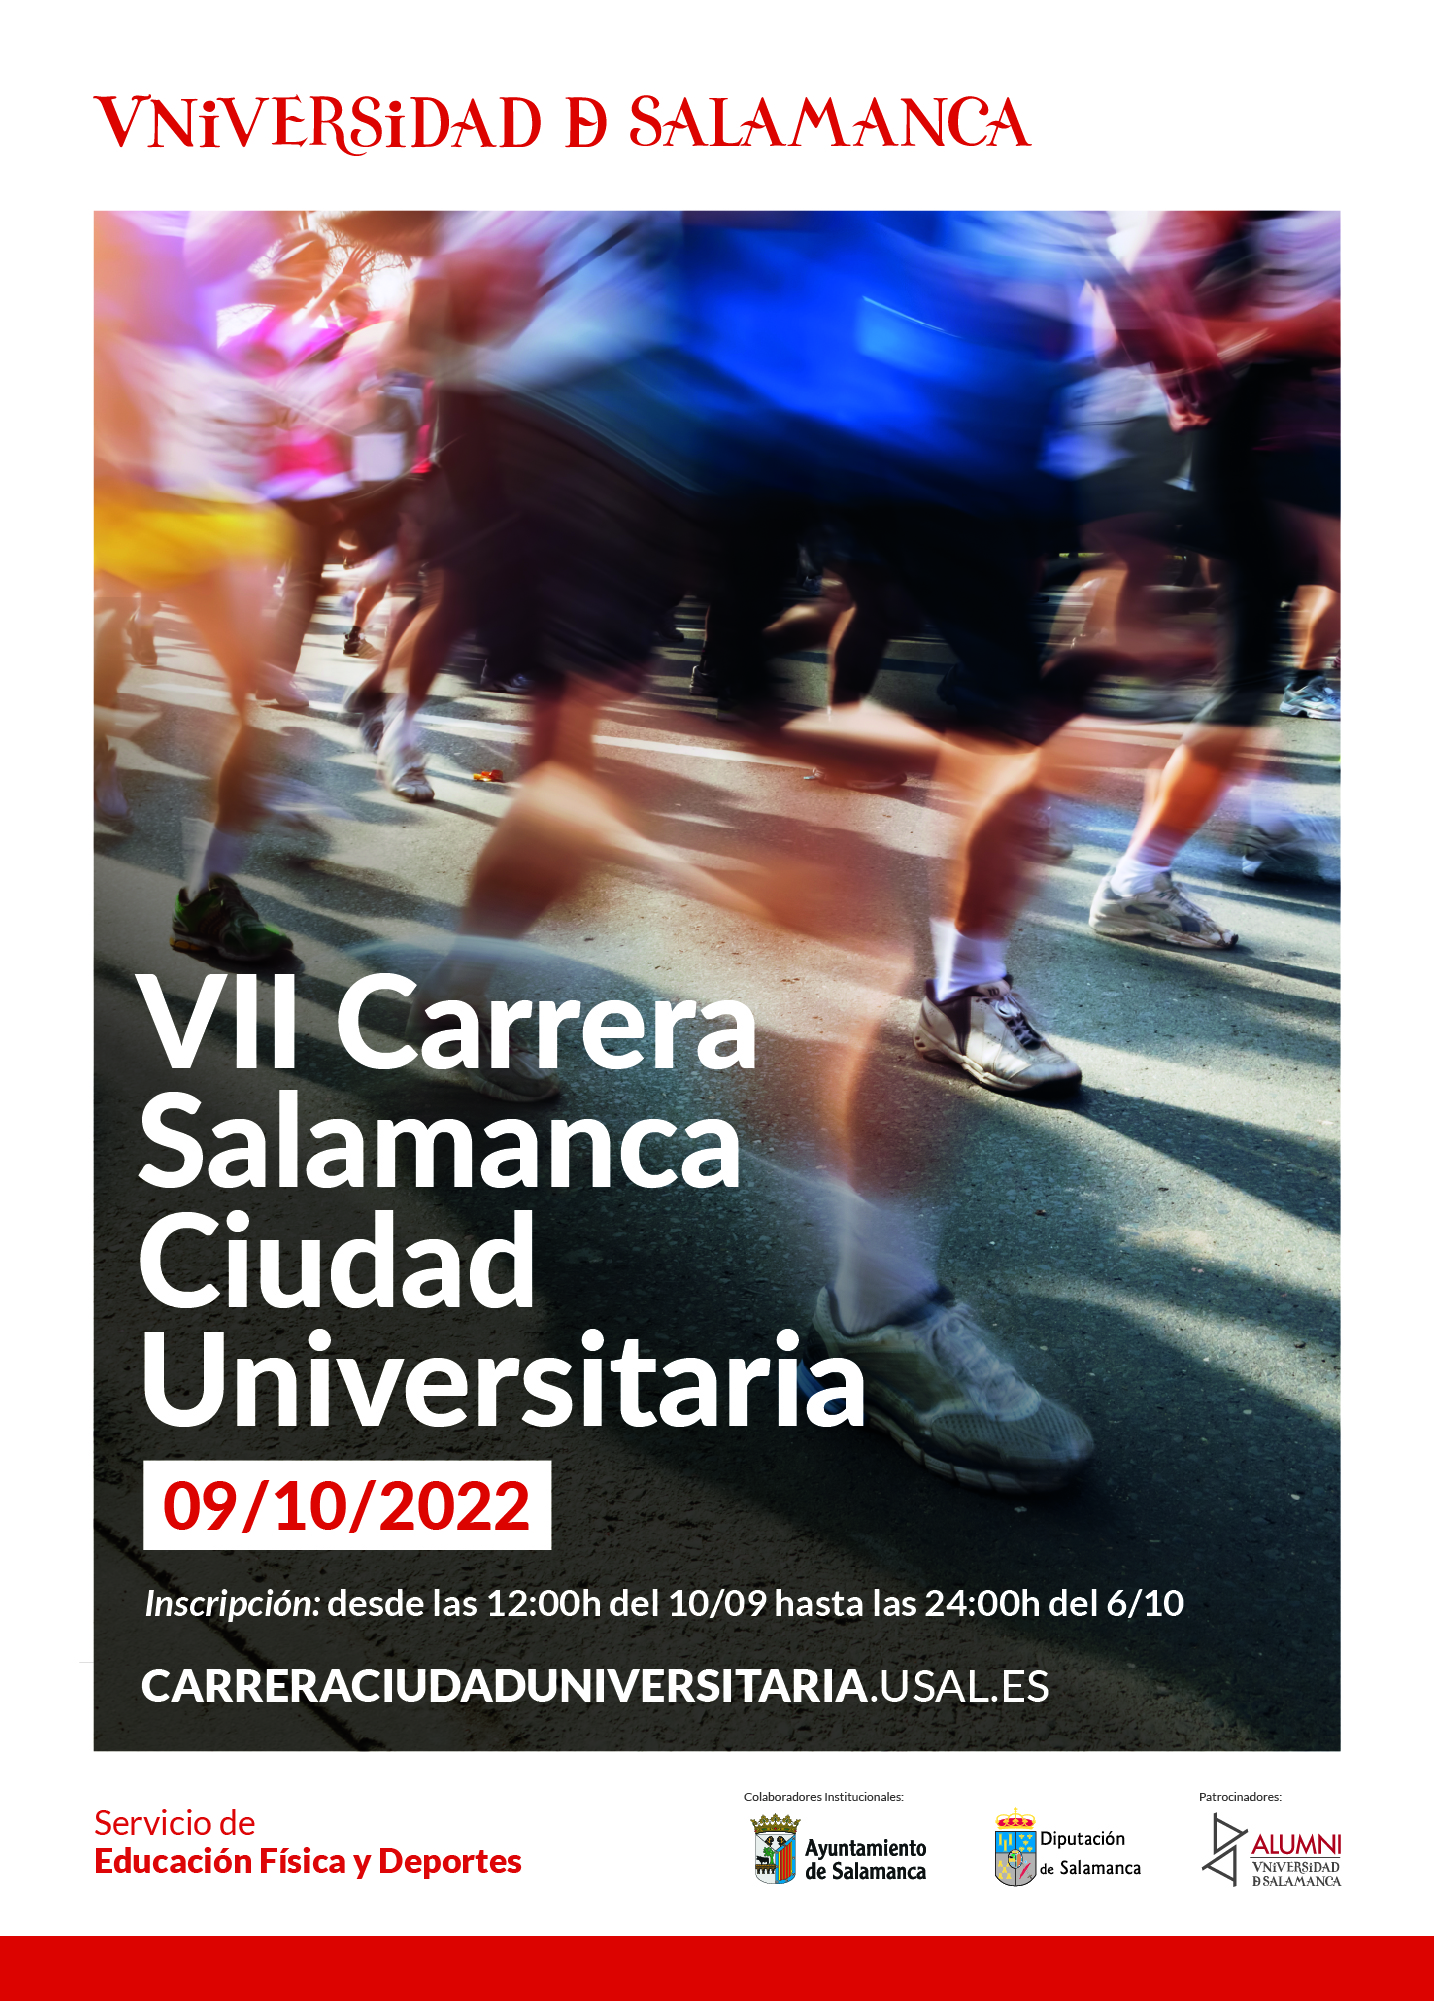 La VII carrera popular “Salamanca Ciudad Universitaria” se celebrará el domingo 9 de octubre